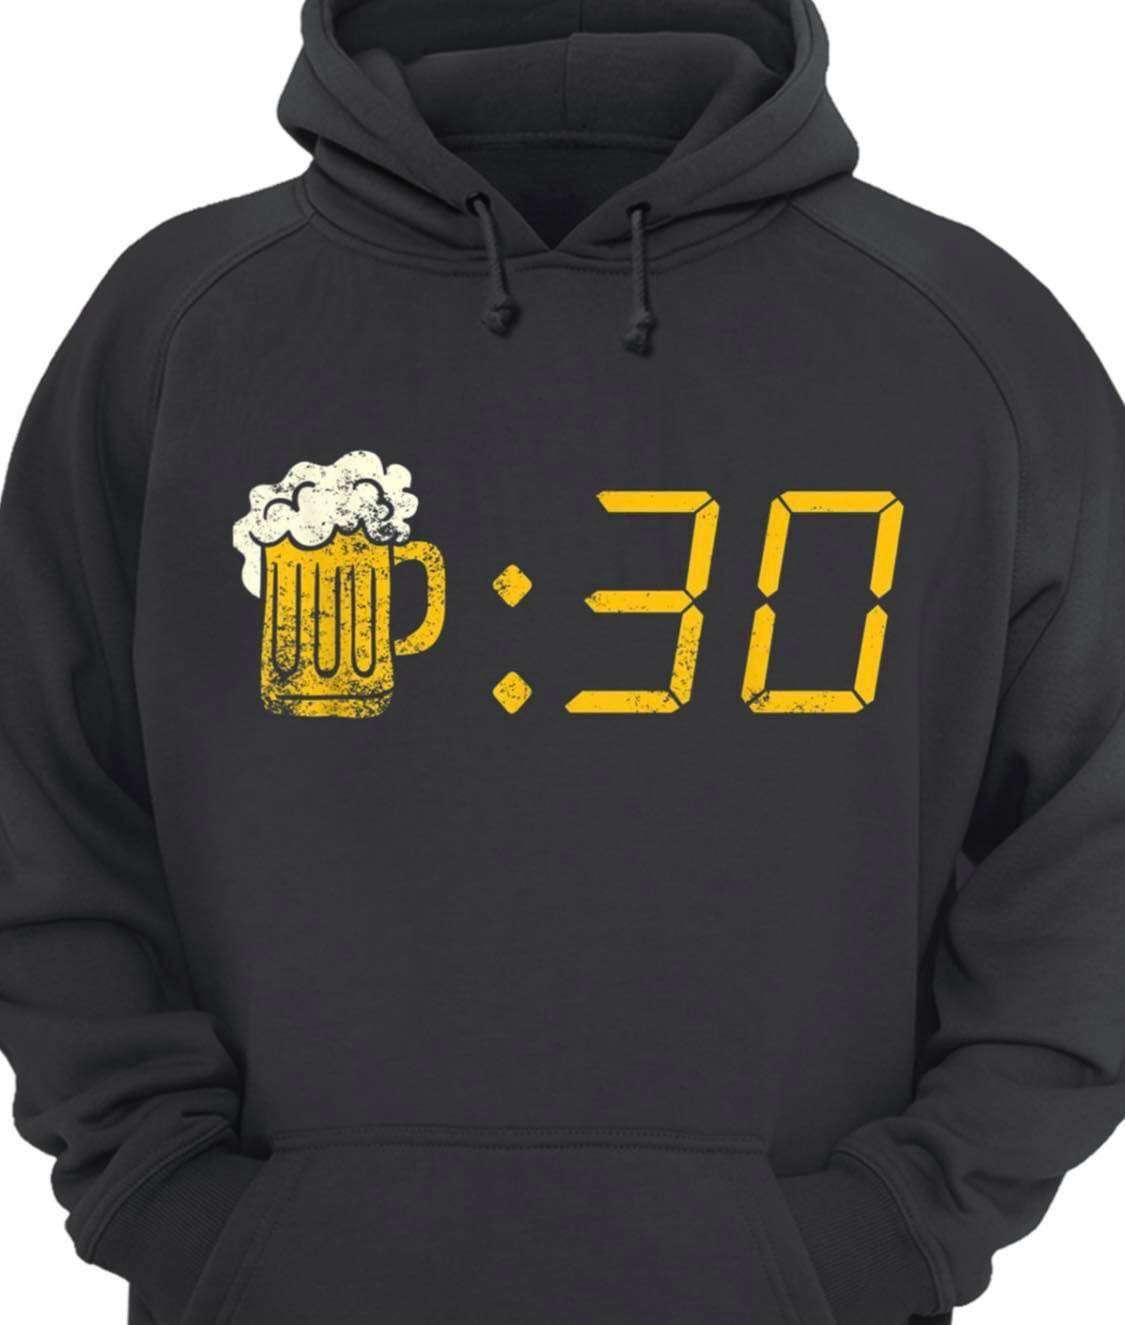 Love Beer - Beer:30, Need Beer